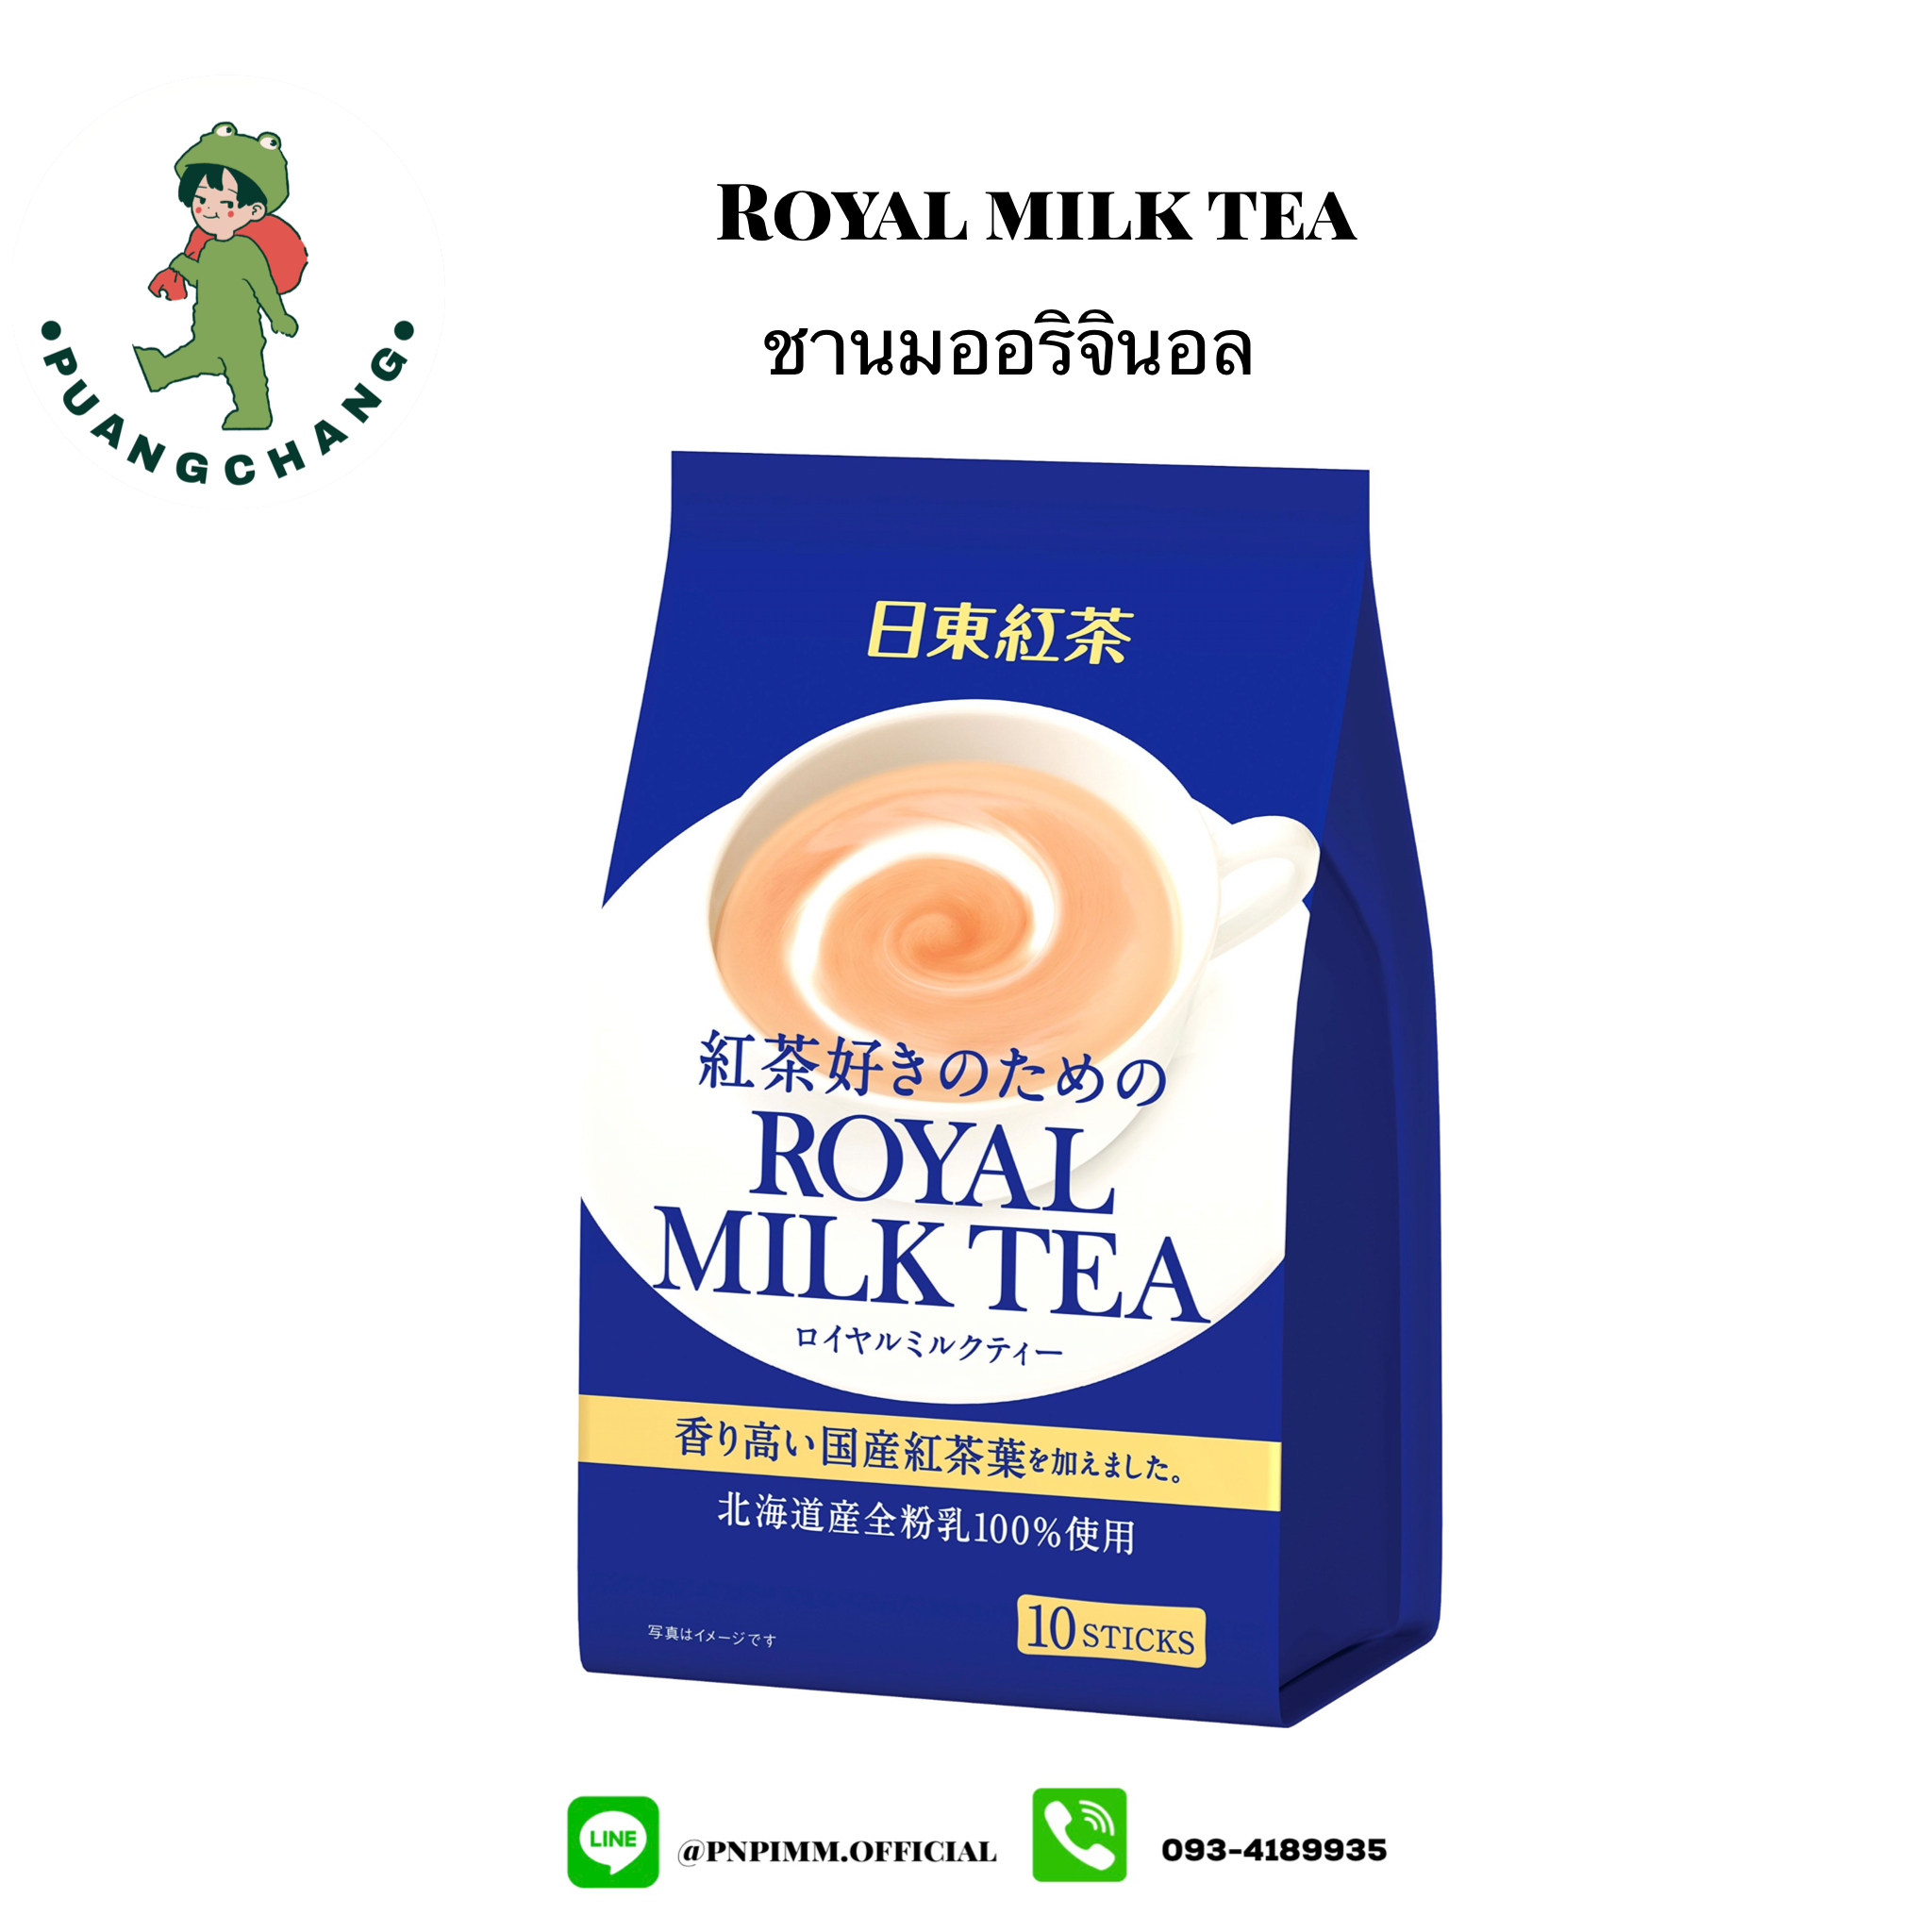 ขานมออริจินอลสีน้ำเงิน Royal milk tea เครื่องดื่มชาพร้อมดื่ม บรรจุ 10 ซอง